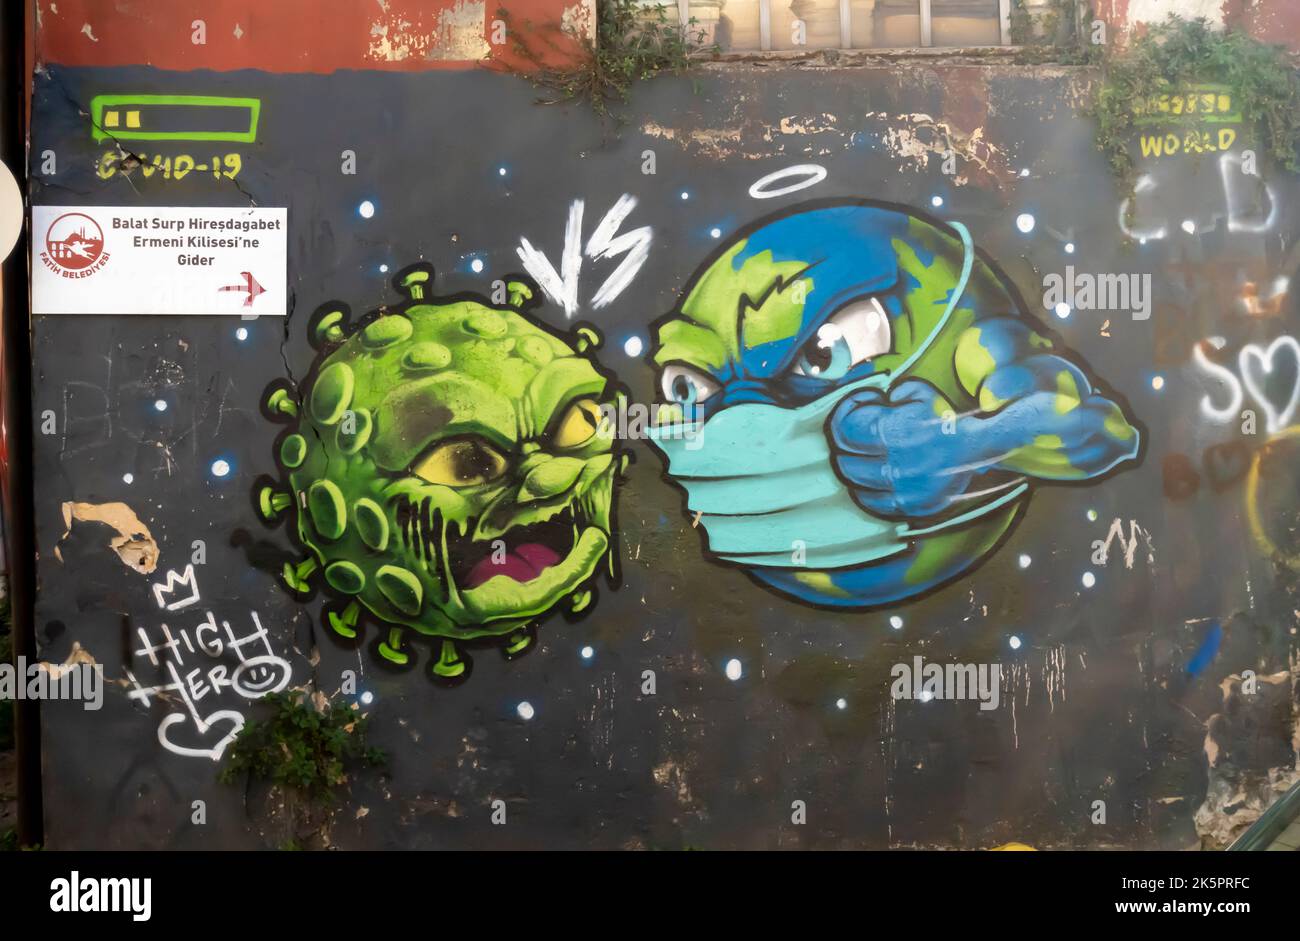 Coronavirus murals. Mural depicting creature in face mask battling corona-virus. Balat, Istanbul, Turkey. Covid-19 artwork. Stock Photo